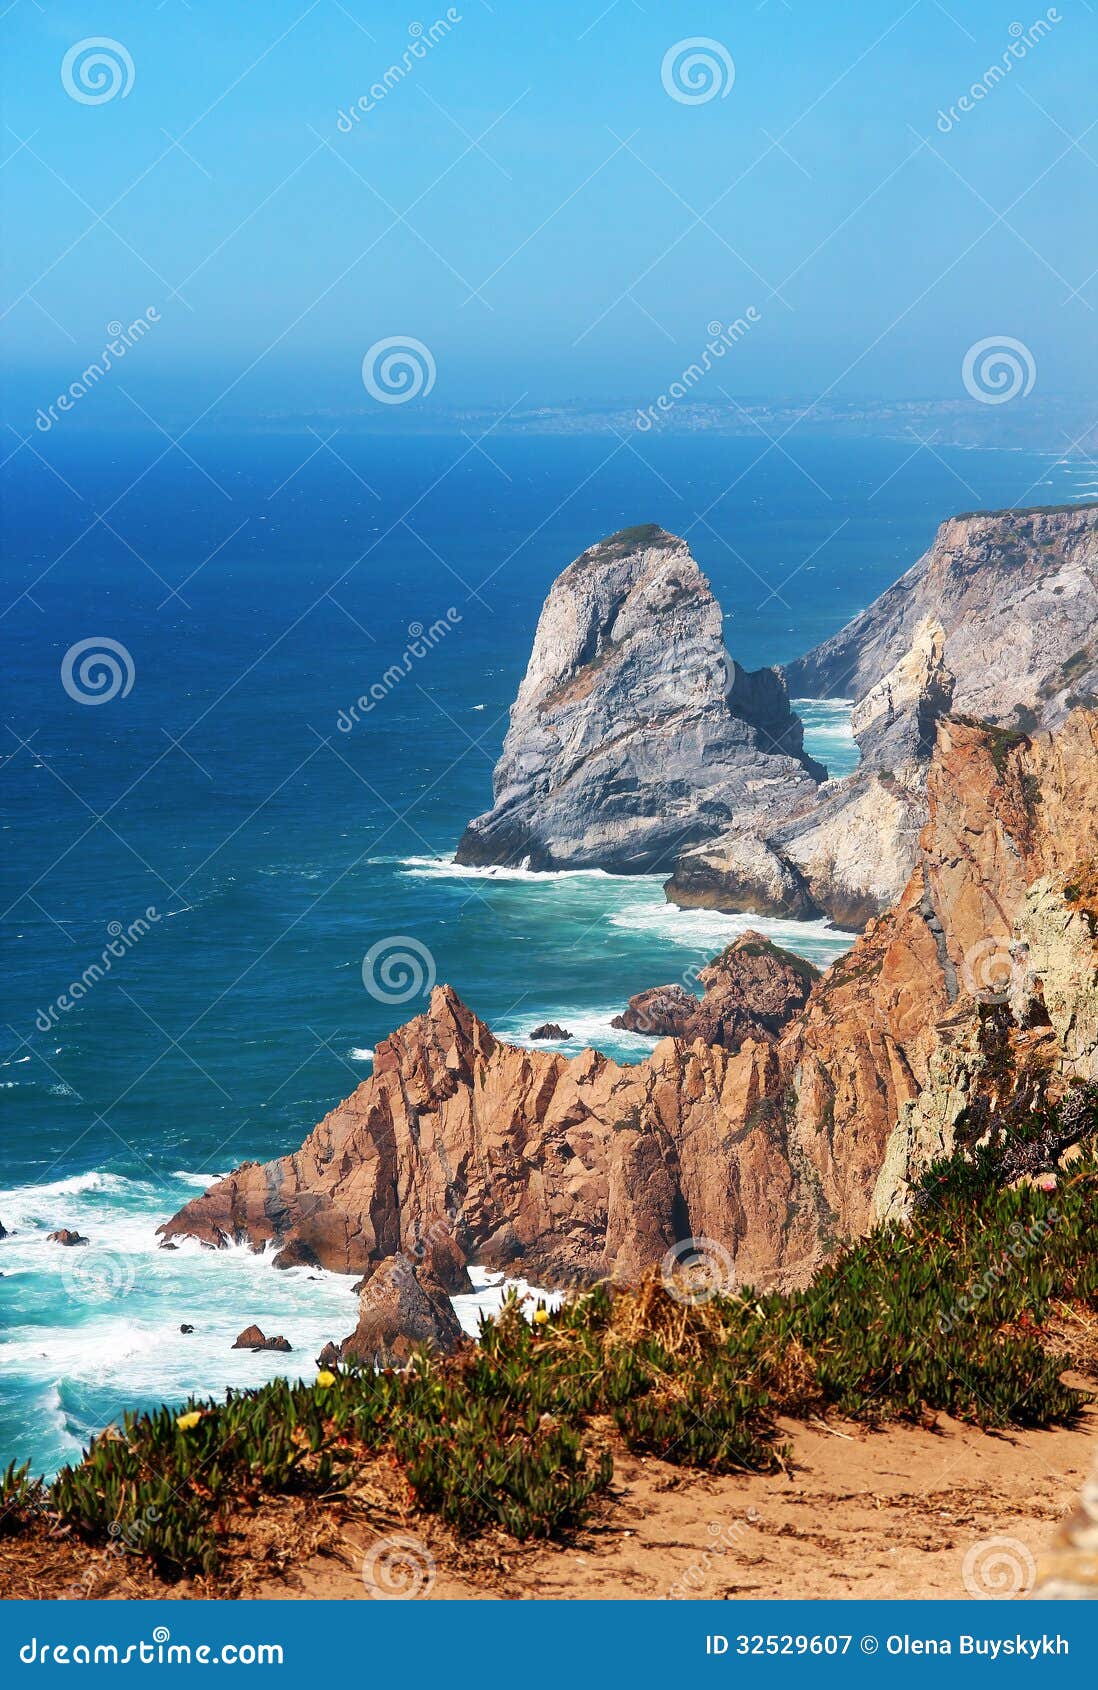 cape roca, portugal